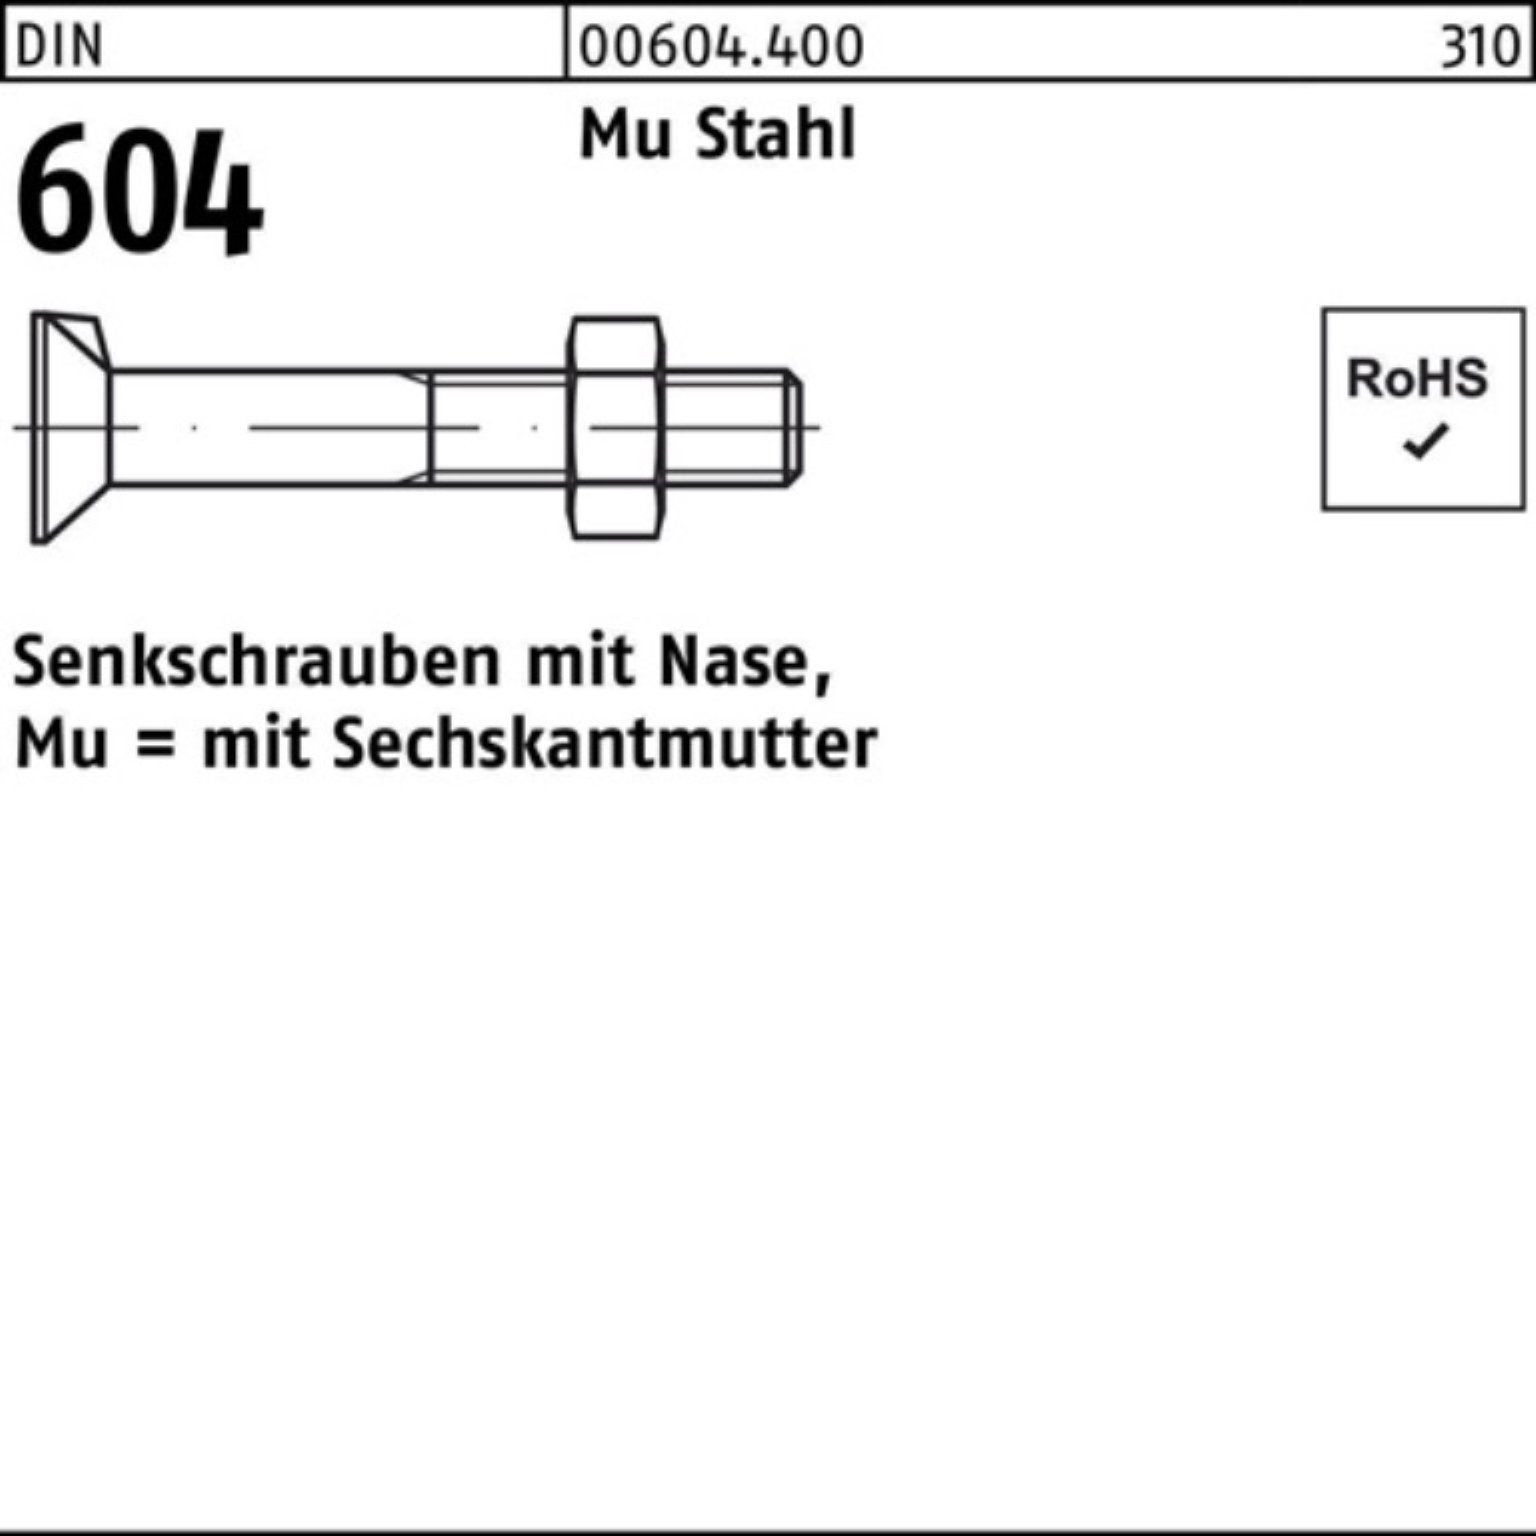 Reyher Senkschraube 100er Pack Senkschraube DIN 604 Nase/6-ktmutter M16x 40 Mu Stahl 4.6 5